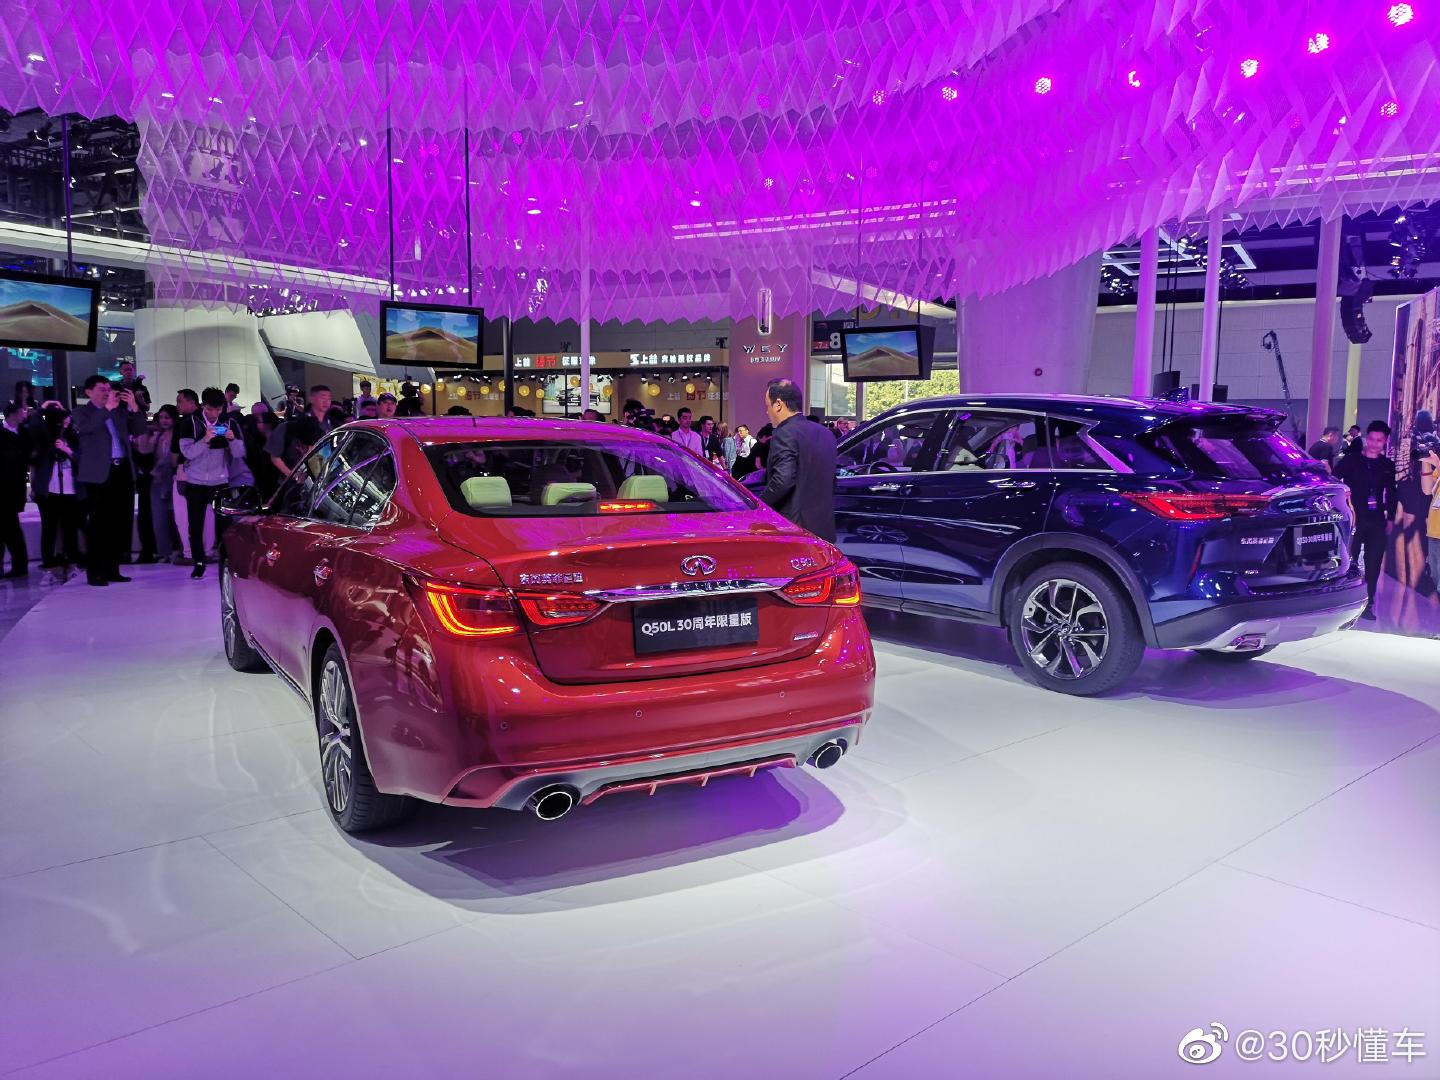 2019广州车展:英菲尼迪q50l30周年纪念版车型正式上市,新车售价为31